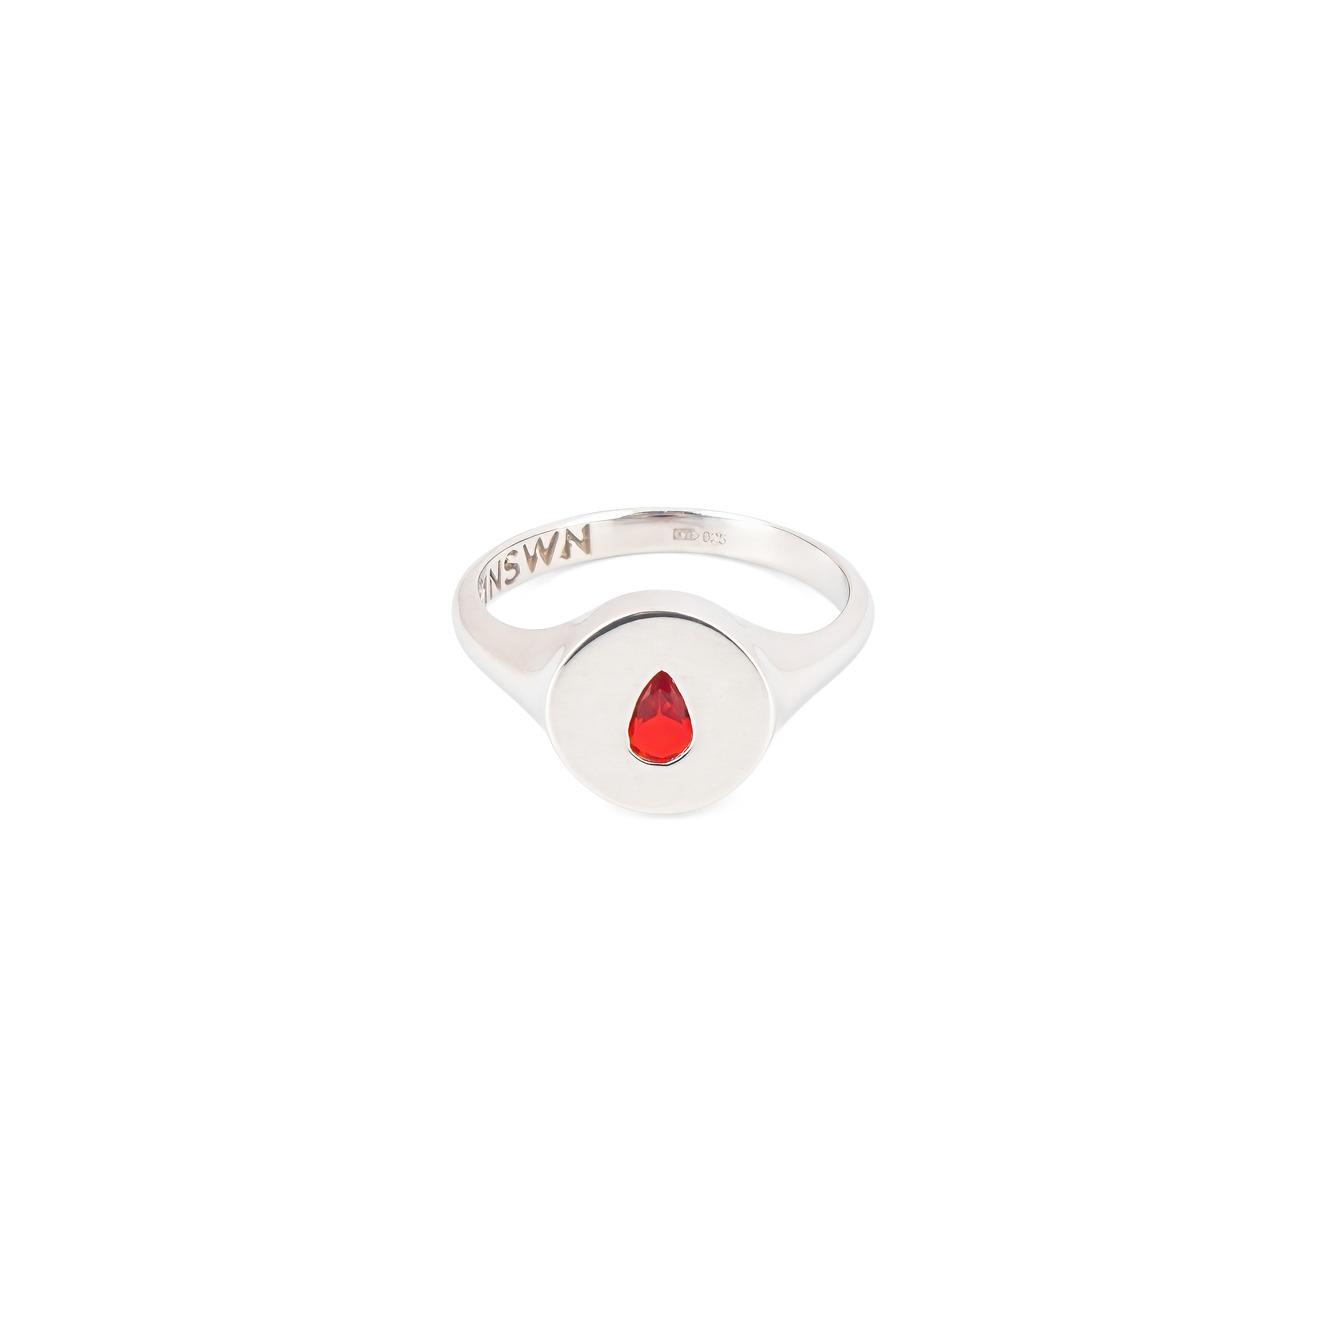 Moonswoon Кольцо-печатка из серебра с красной каплей moonswoon широкое кольцо из серебра